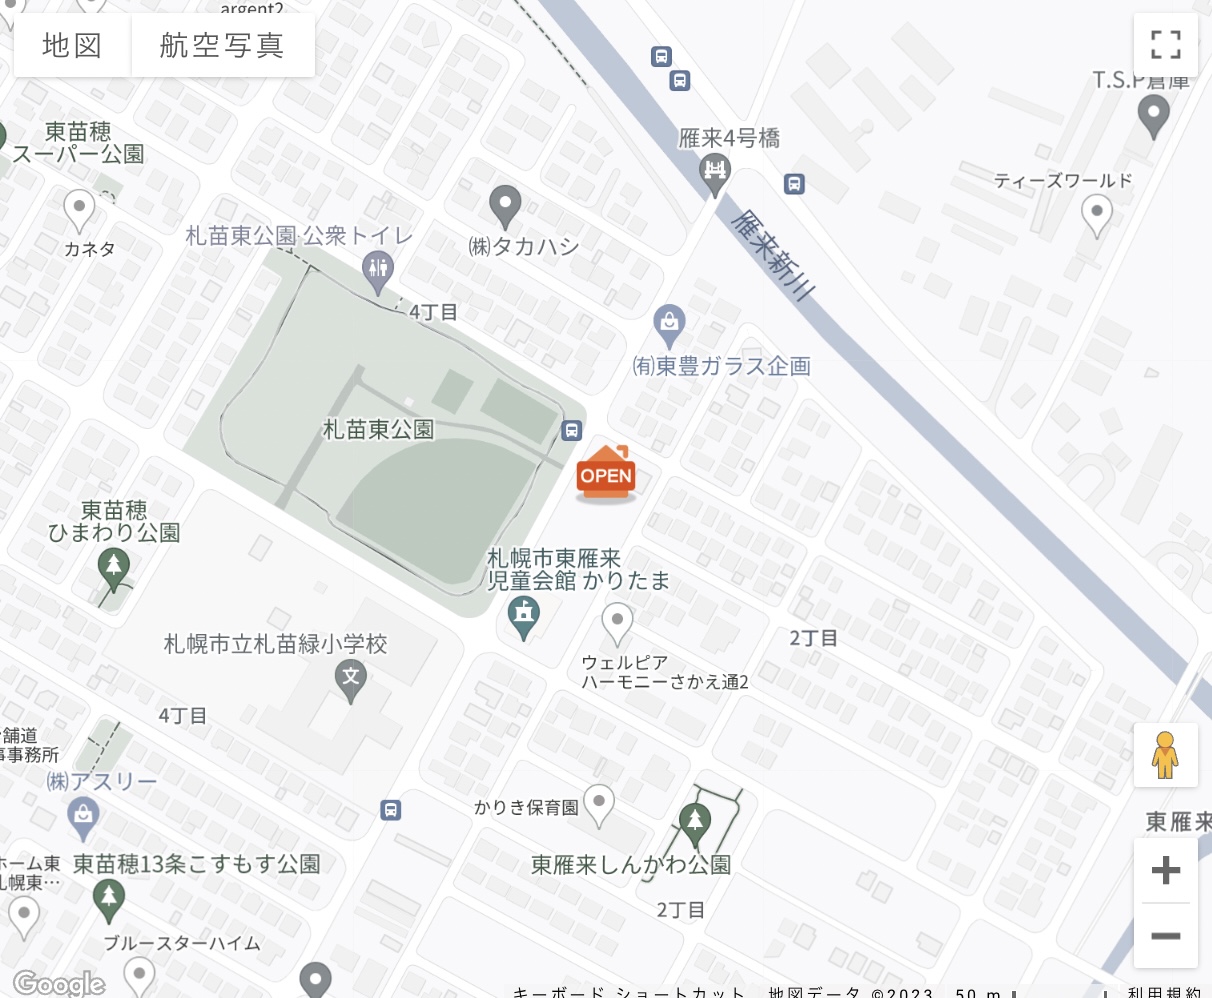 map_hk.jpg